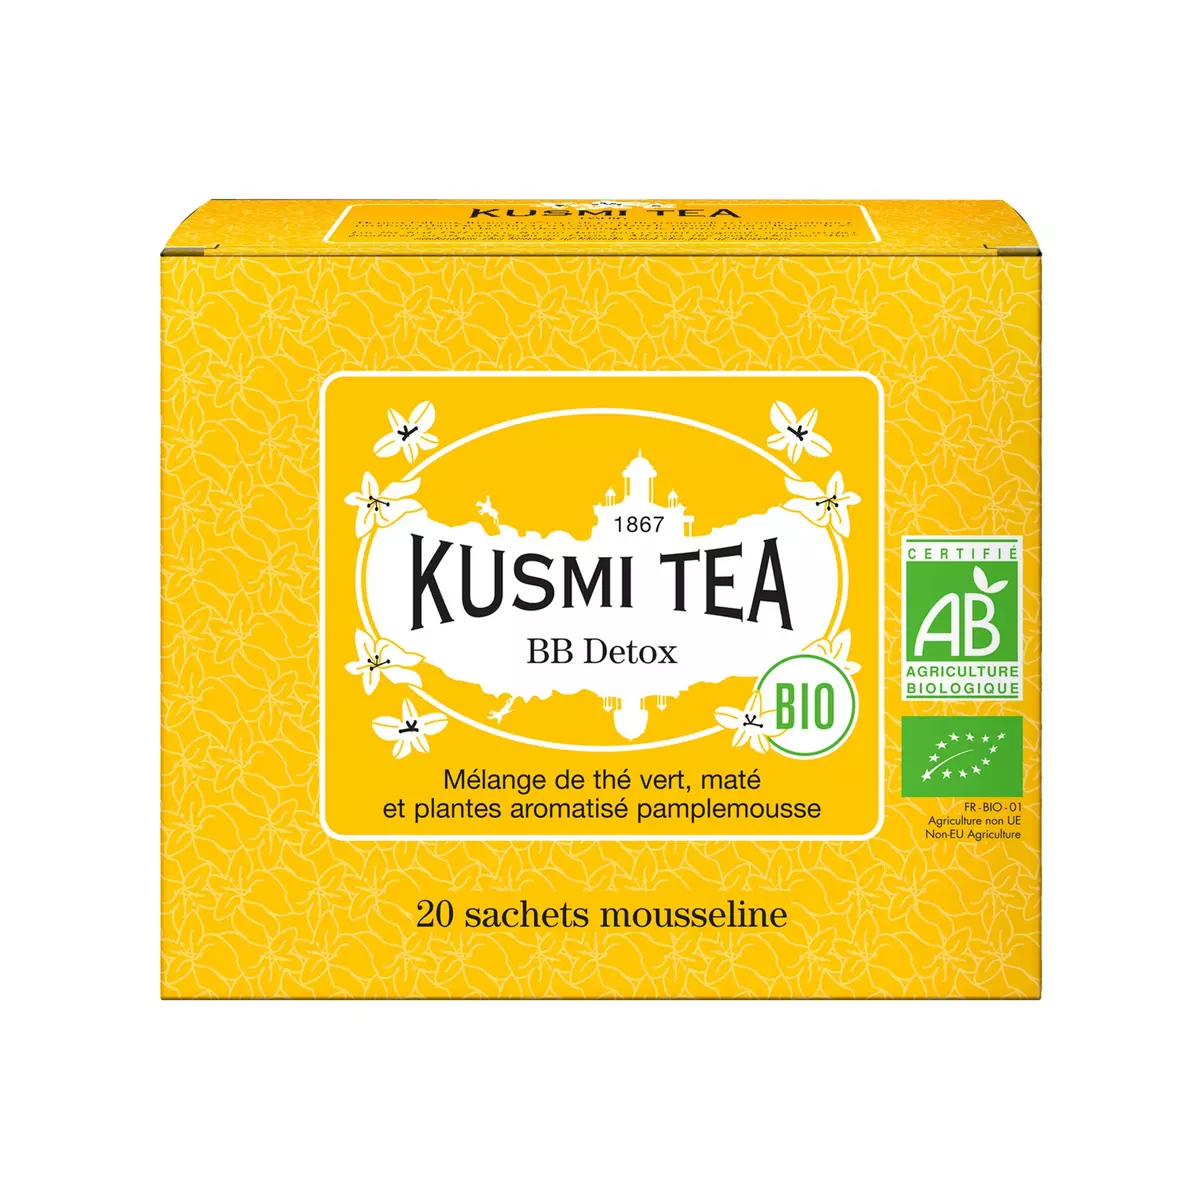 KUSMI TEA BB Detox bio Mélange de thé vert maté et plantes aromatisé pamplemousse 20 sachets 40g